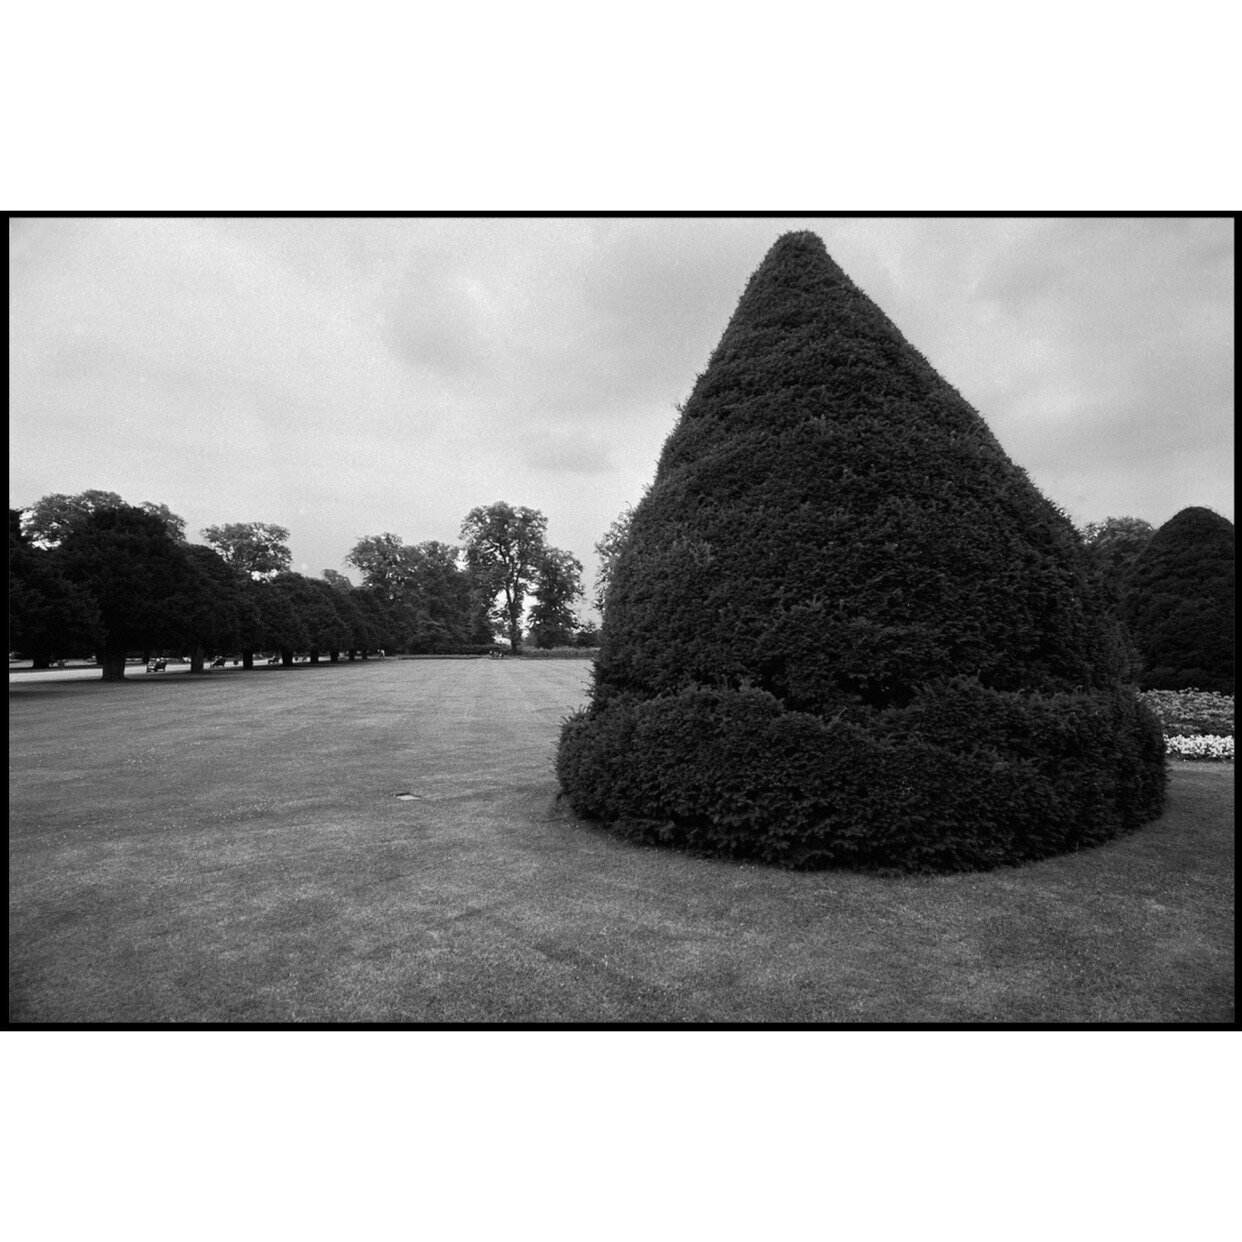 𝗧𝗶𝘁𝗹𝗲: 'Hyde Park Pyramid' | 𝗟𝗼𝗰𝗮𝘁𝗶𝗼𝗻: London, UK | 𝗬𝗲𝗮𝗿: 1982⁠